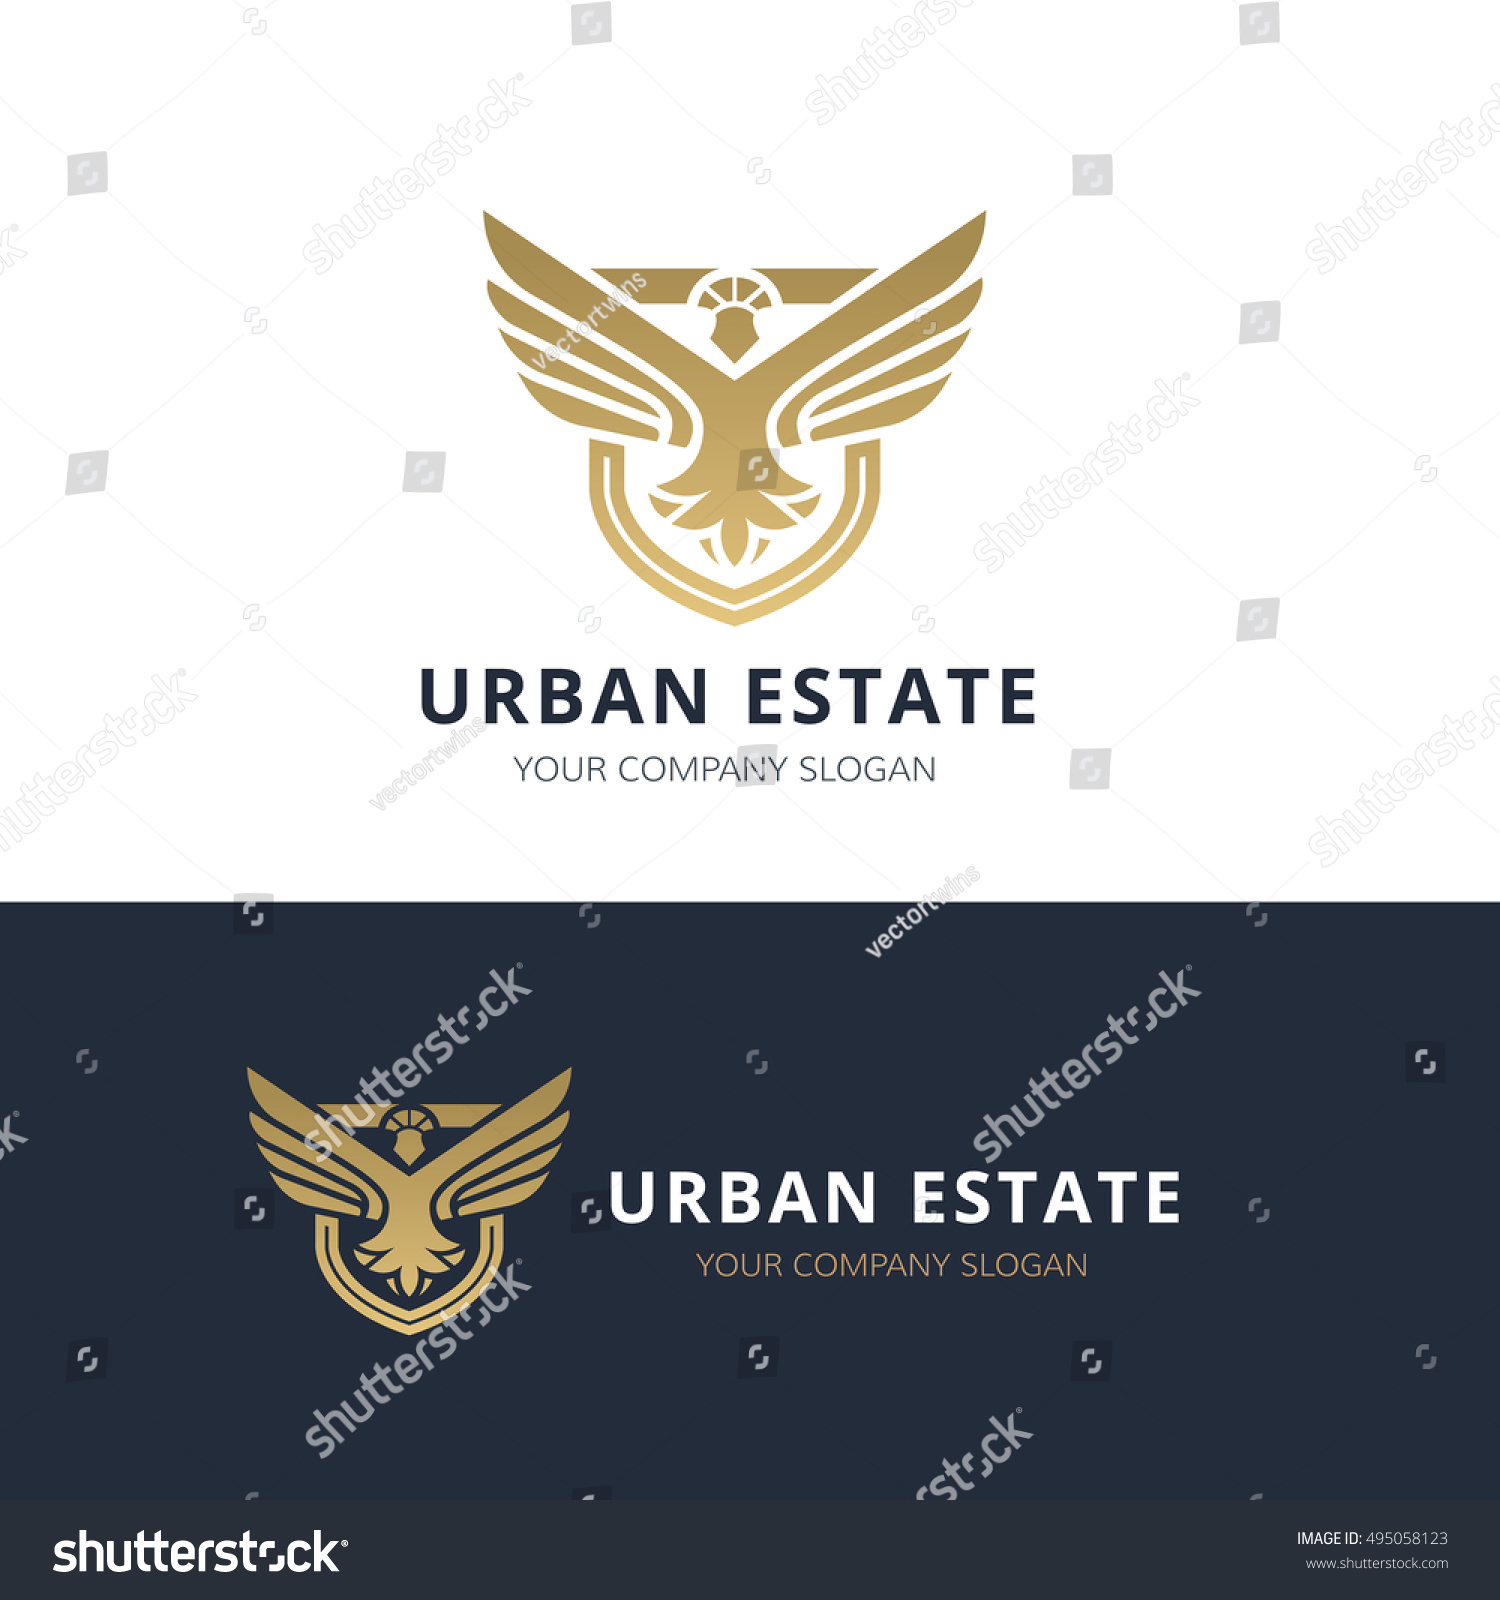 Download Urban Real Estate Logo Vector Logo Stock Vector 495058123 ...